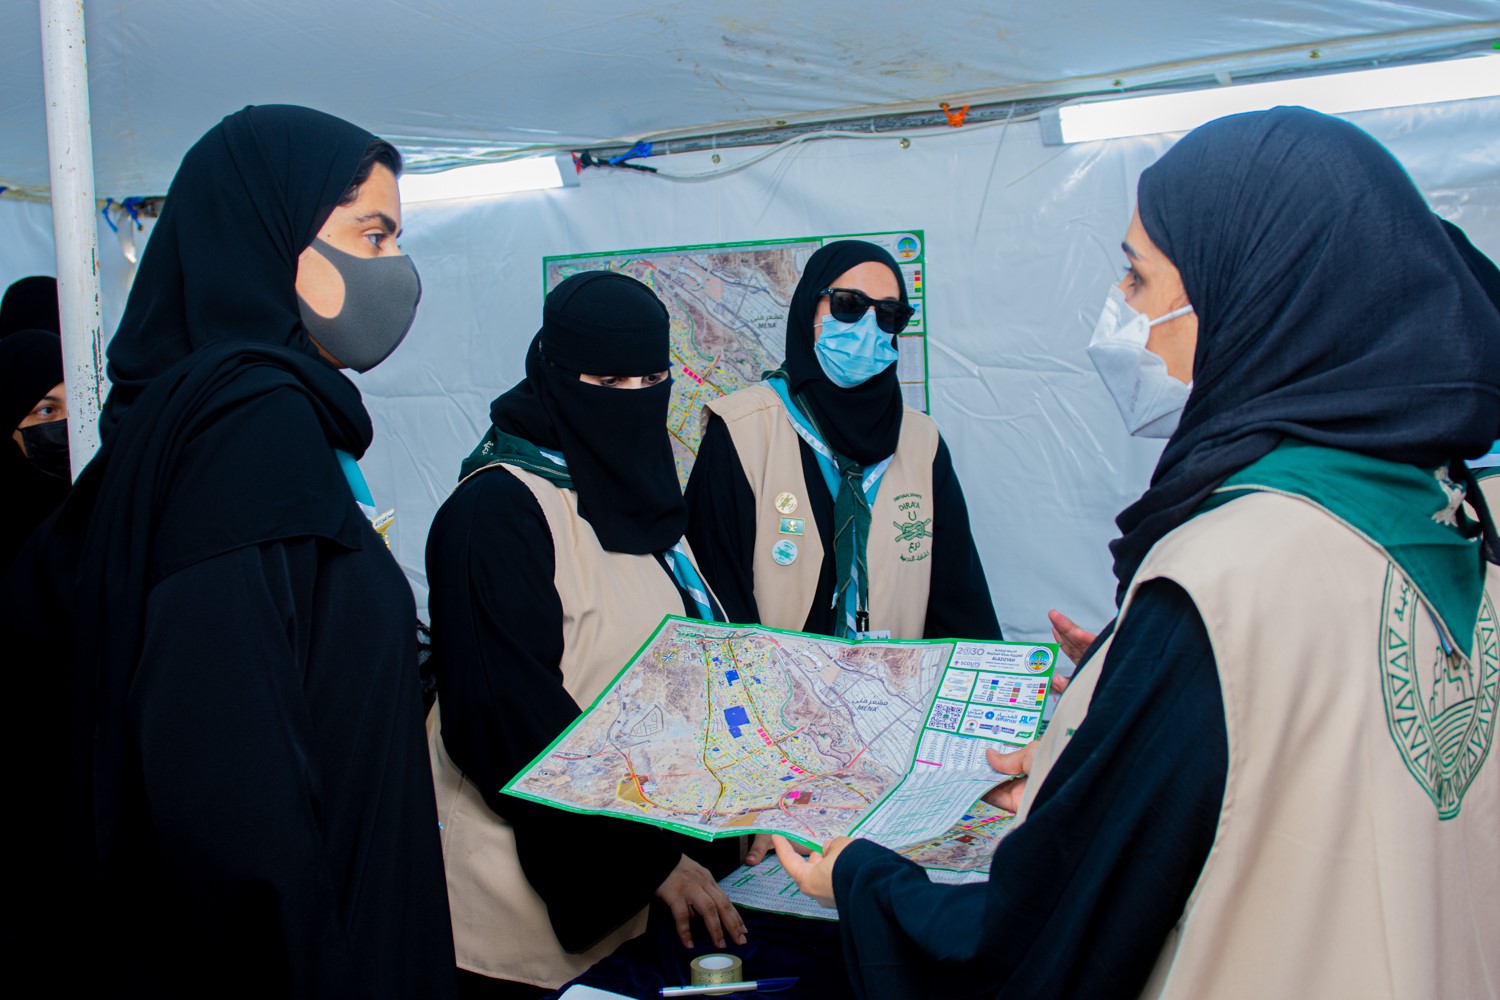 الأميرة سما: مشاركة فتيات الكشافة في الحج تأكيد على تمكين المرأة السعودية